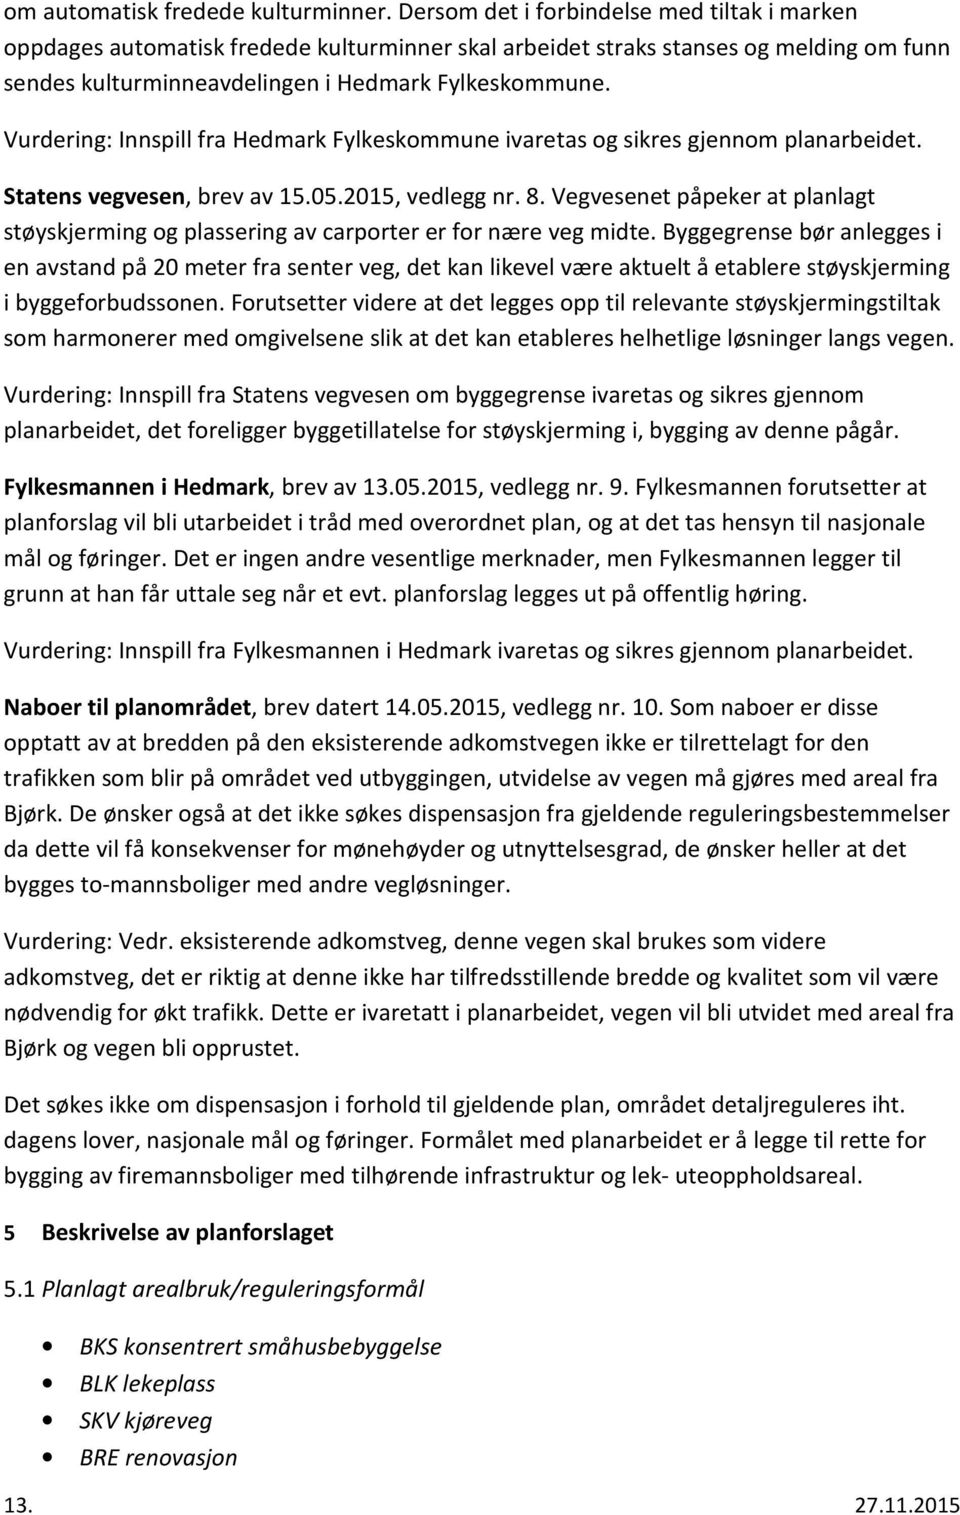 Vurdering: Innspill fra Hedmark Fylkeskommune ivaretas og sikres gjennom planarbeidet. Statens vegvesen, brev av 15.05.2015, vedlegg nr. 8.